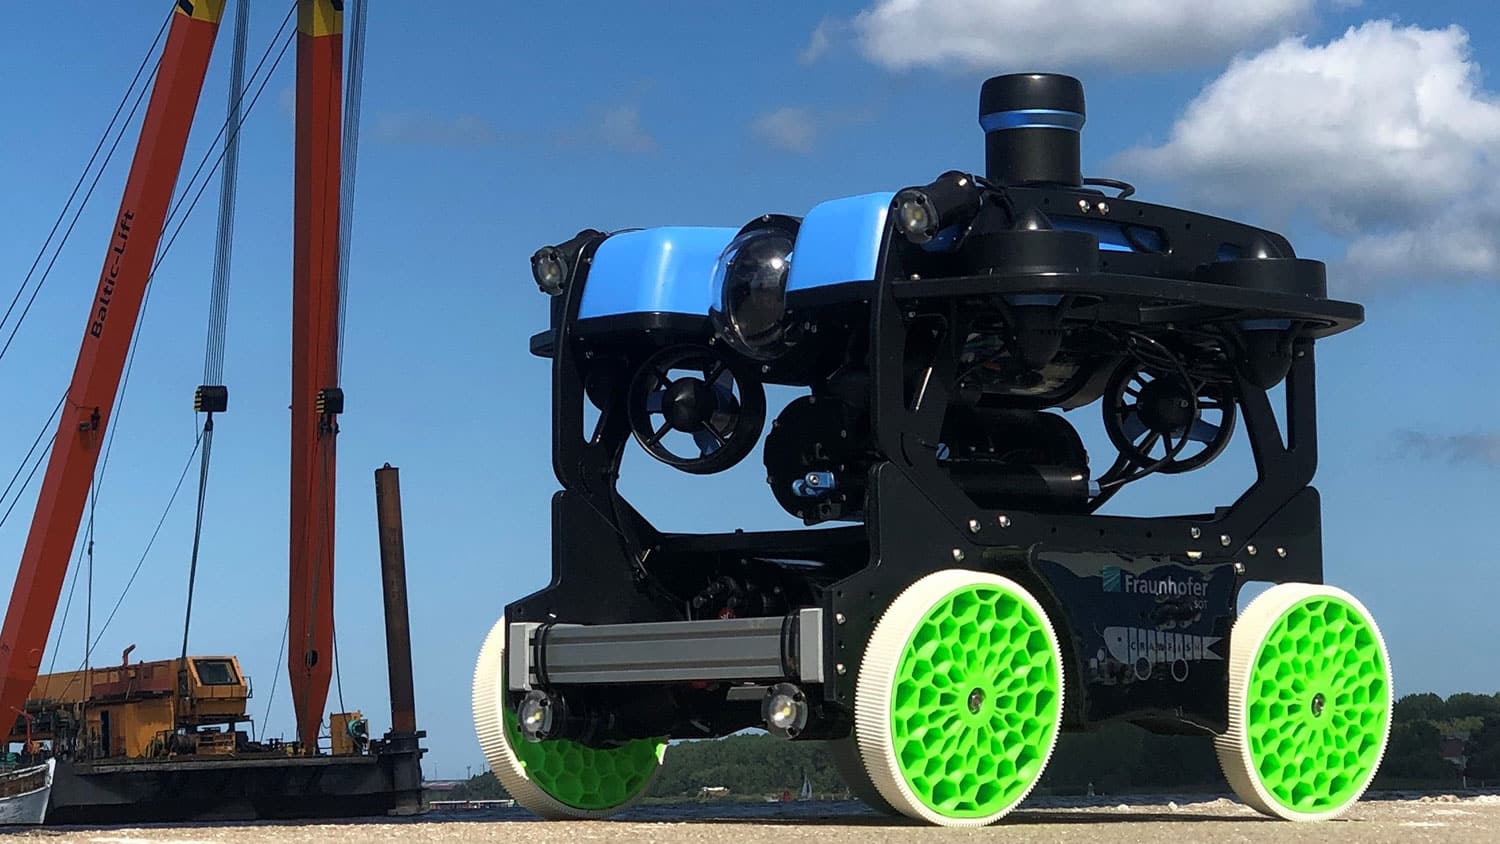 Underwater maintenance robot "Crawfish".